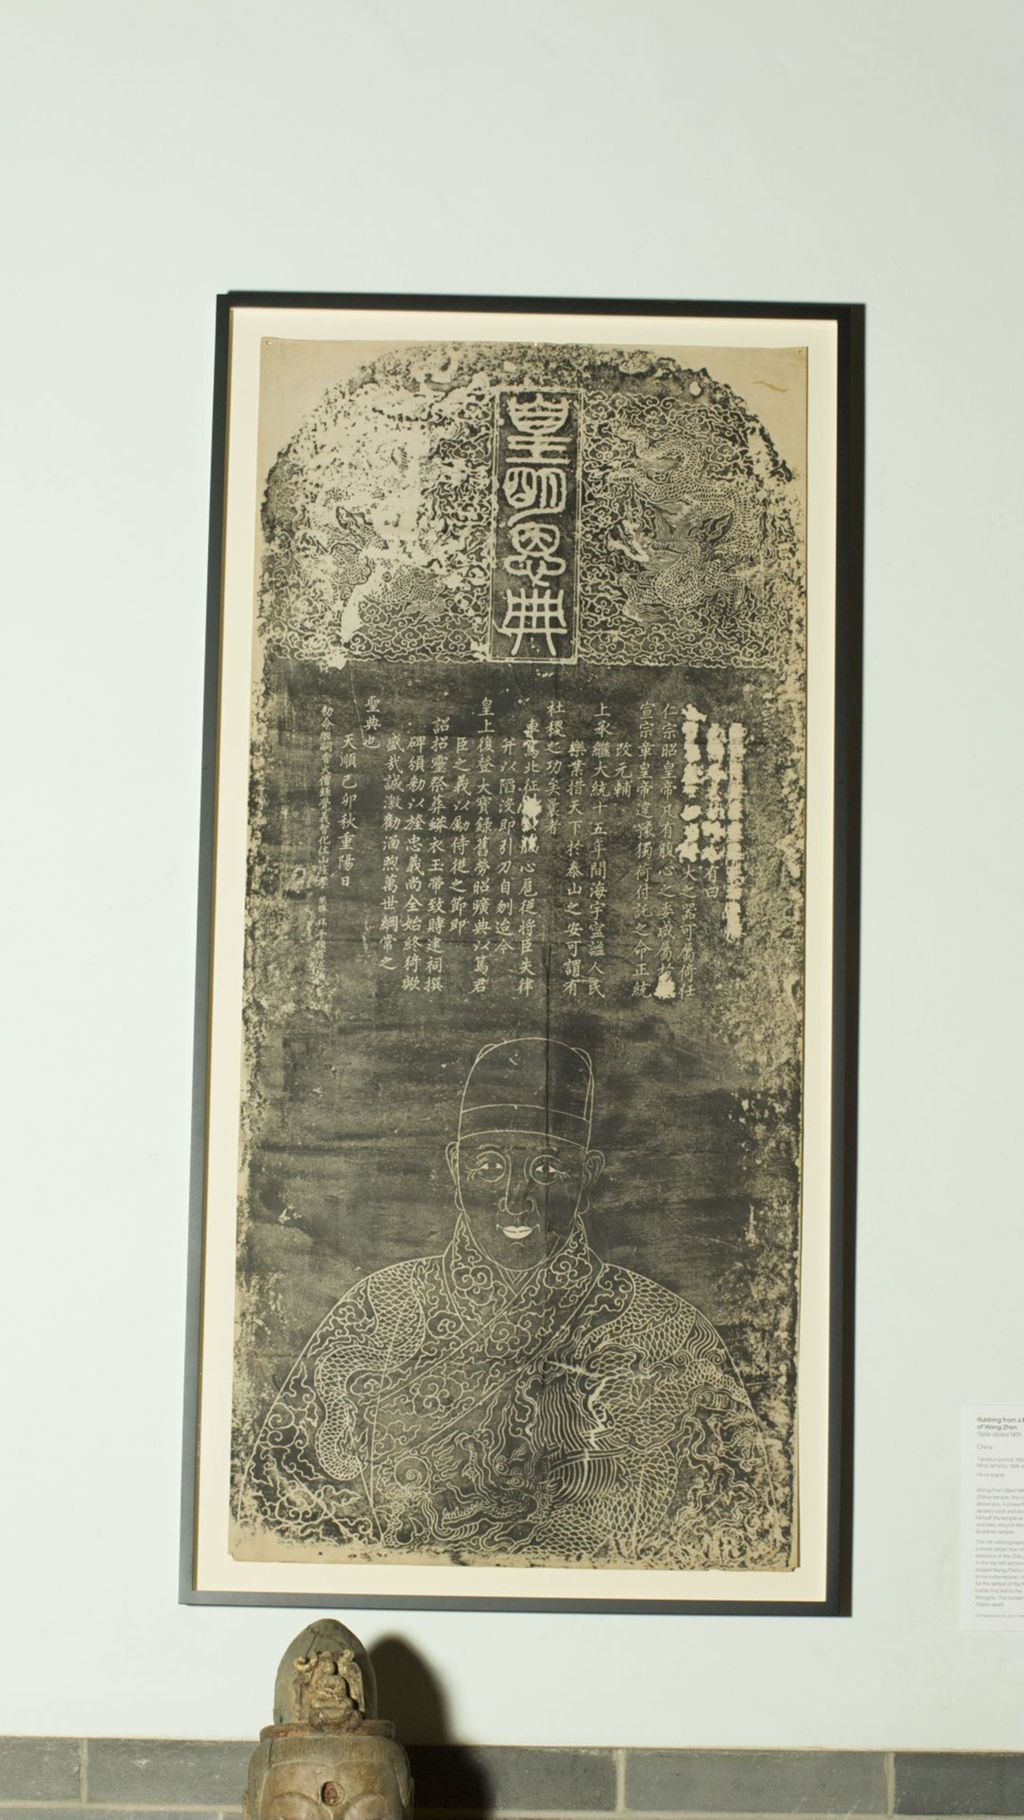 Miniature of Memorial Stele of Wang Zhen, ink rubbing